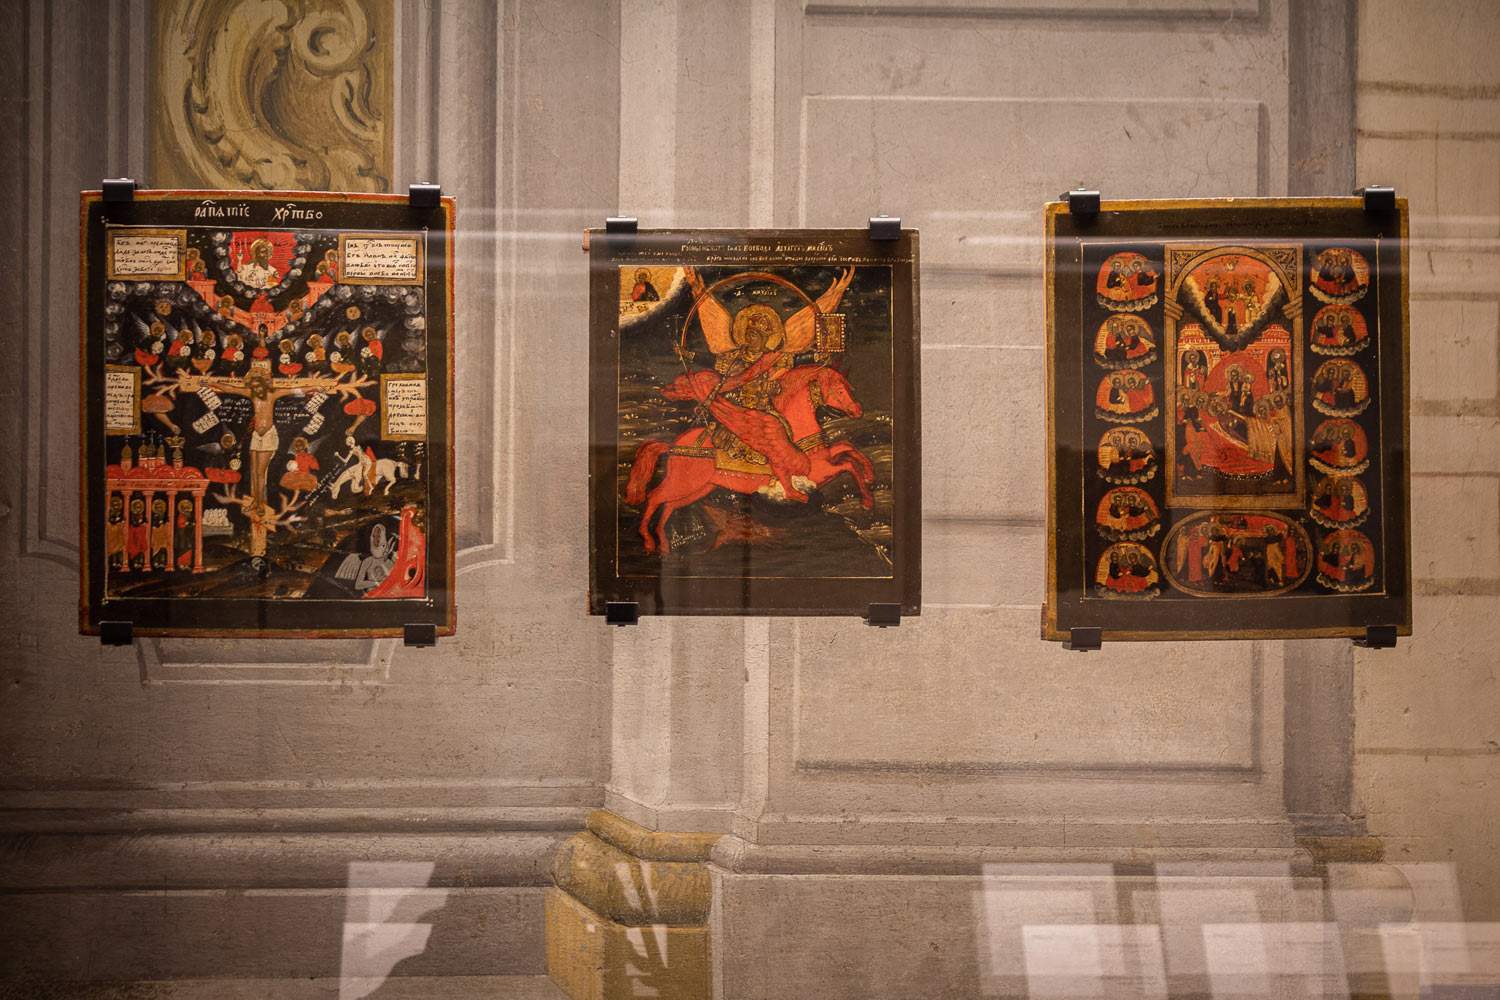 Florence, le nouveau musée des icônes russes ouvre ses portes au palais Pitti